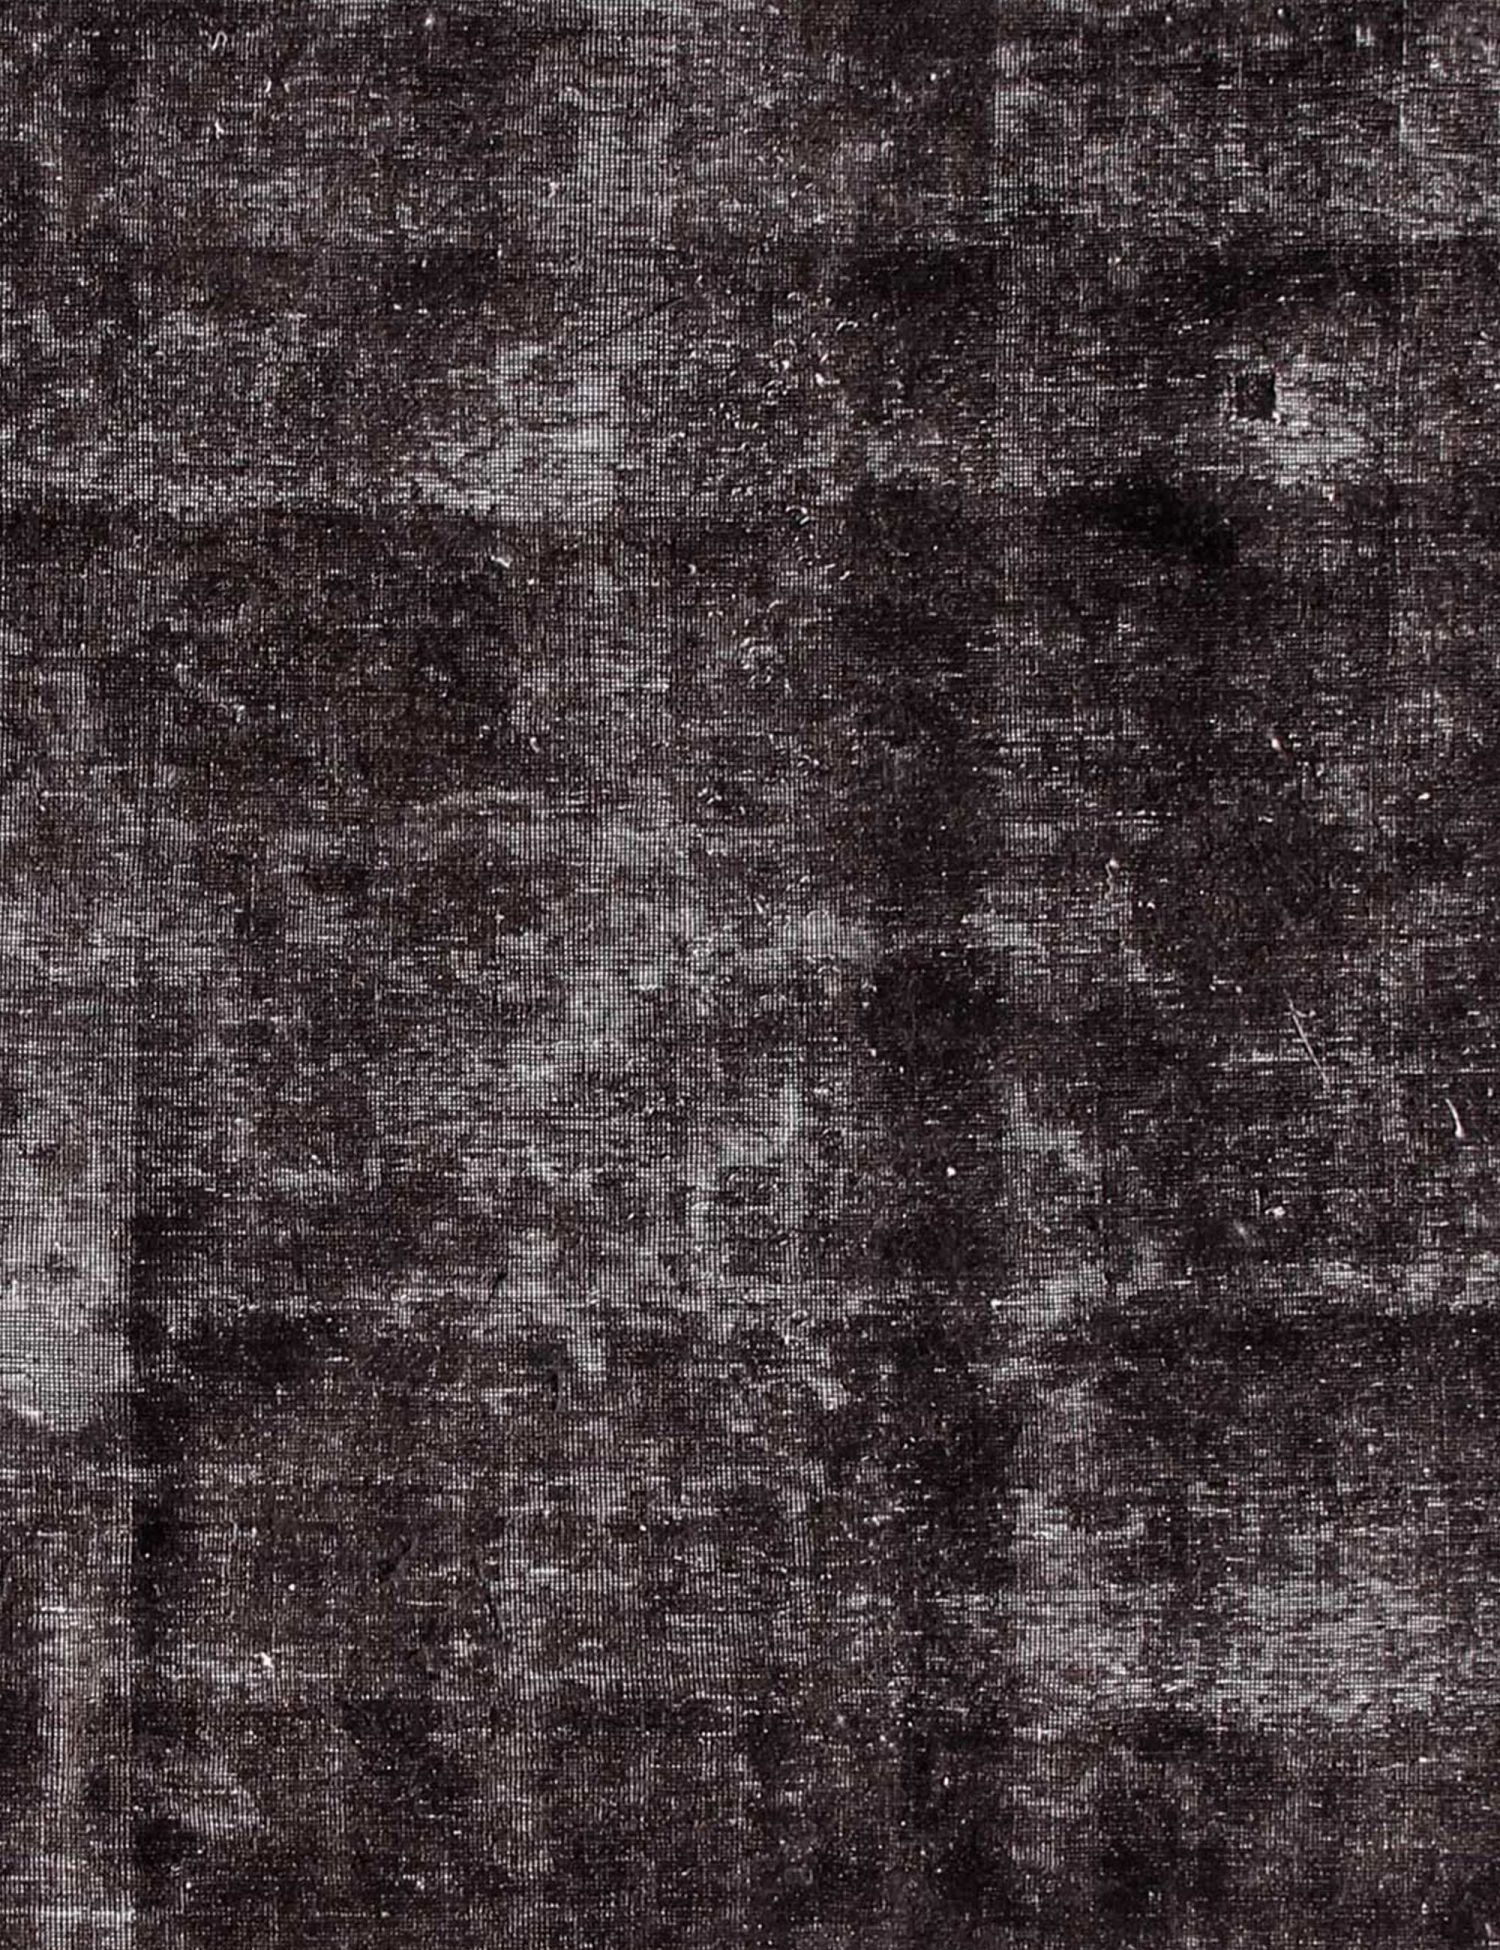 Persischer Vintage Teppich  schwarz <br/>200 x 200 cm